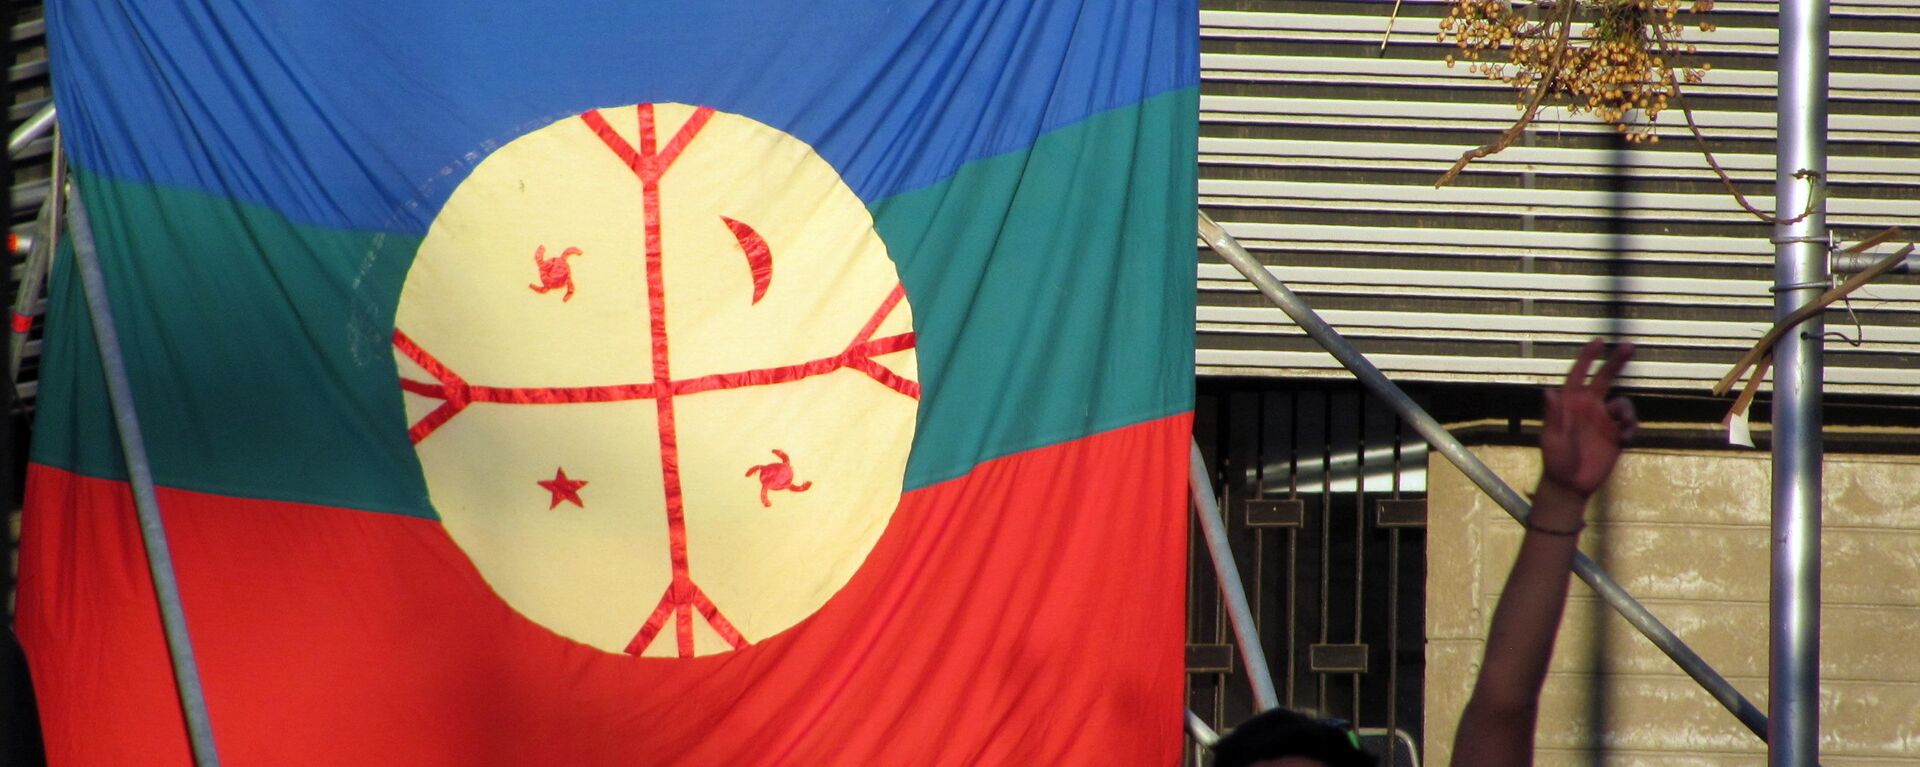 La bandera de mapuche - Sputnik Mundo, 1920, 29.08.2017